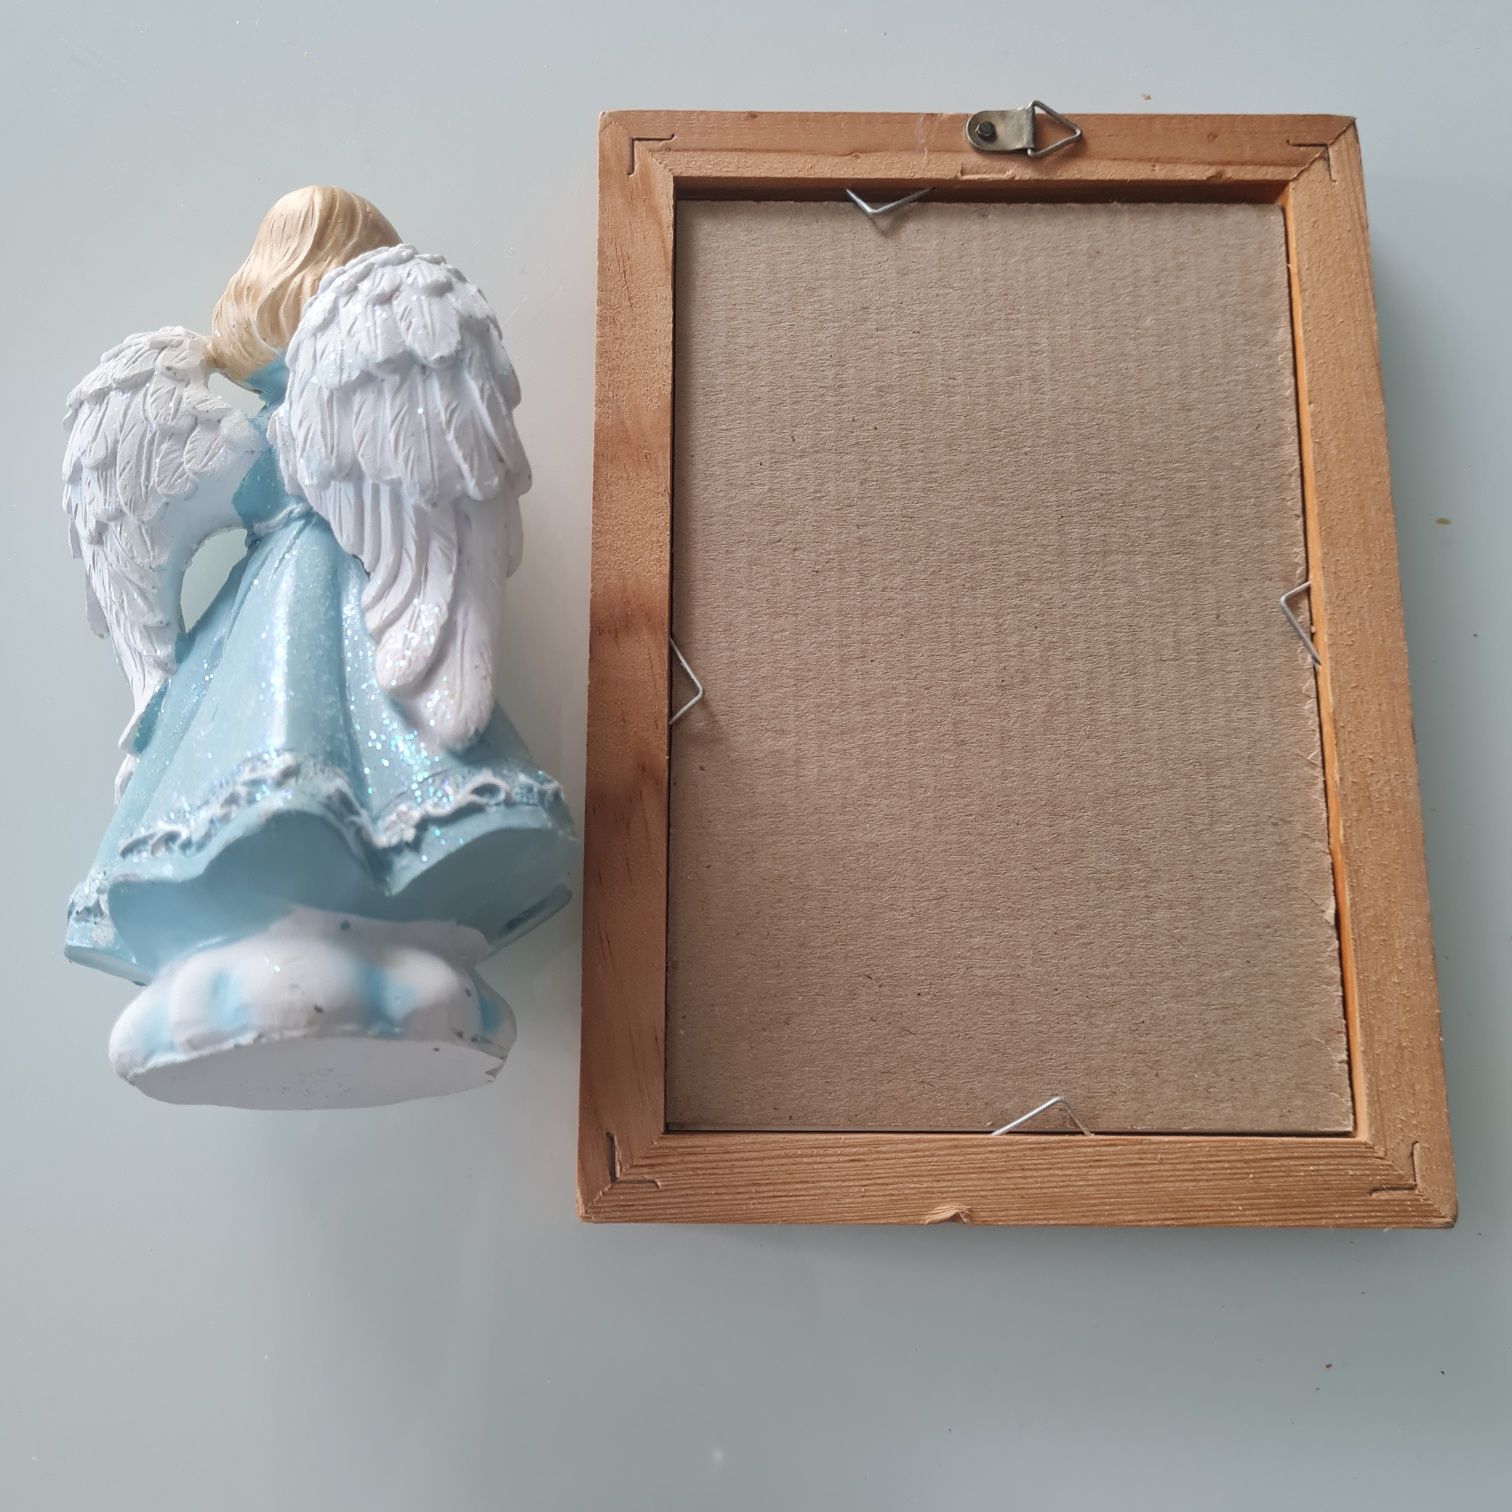 Figurka Anioł i obrazek z Aniołem Stróżem